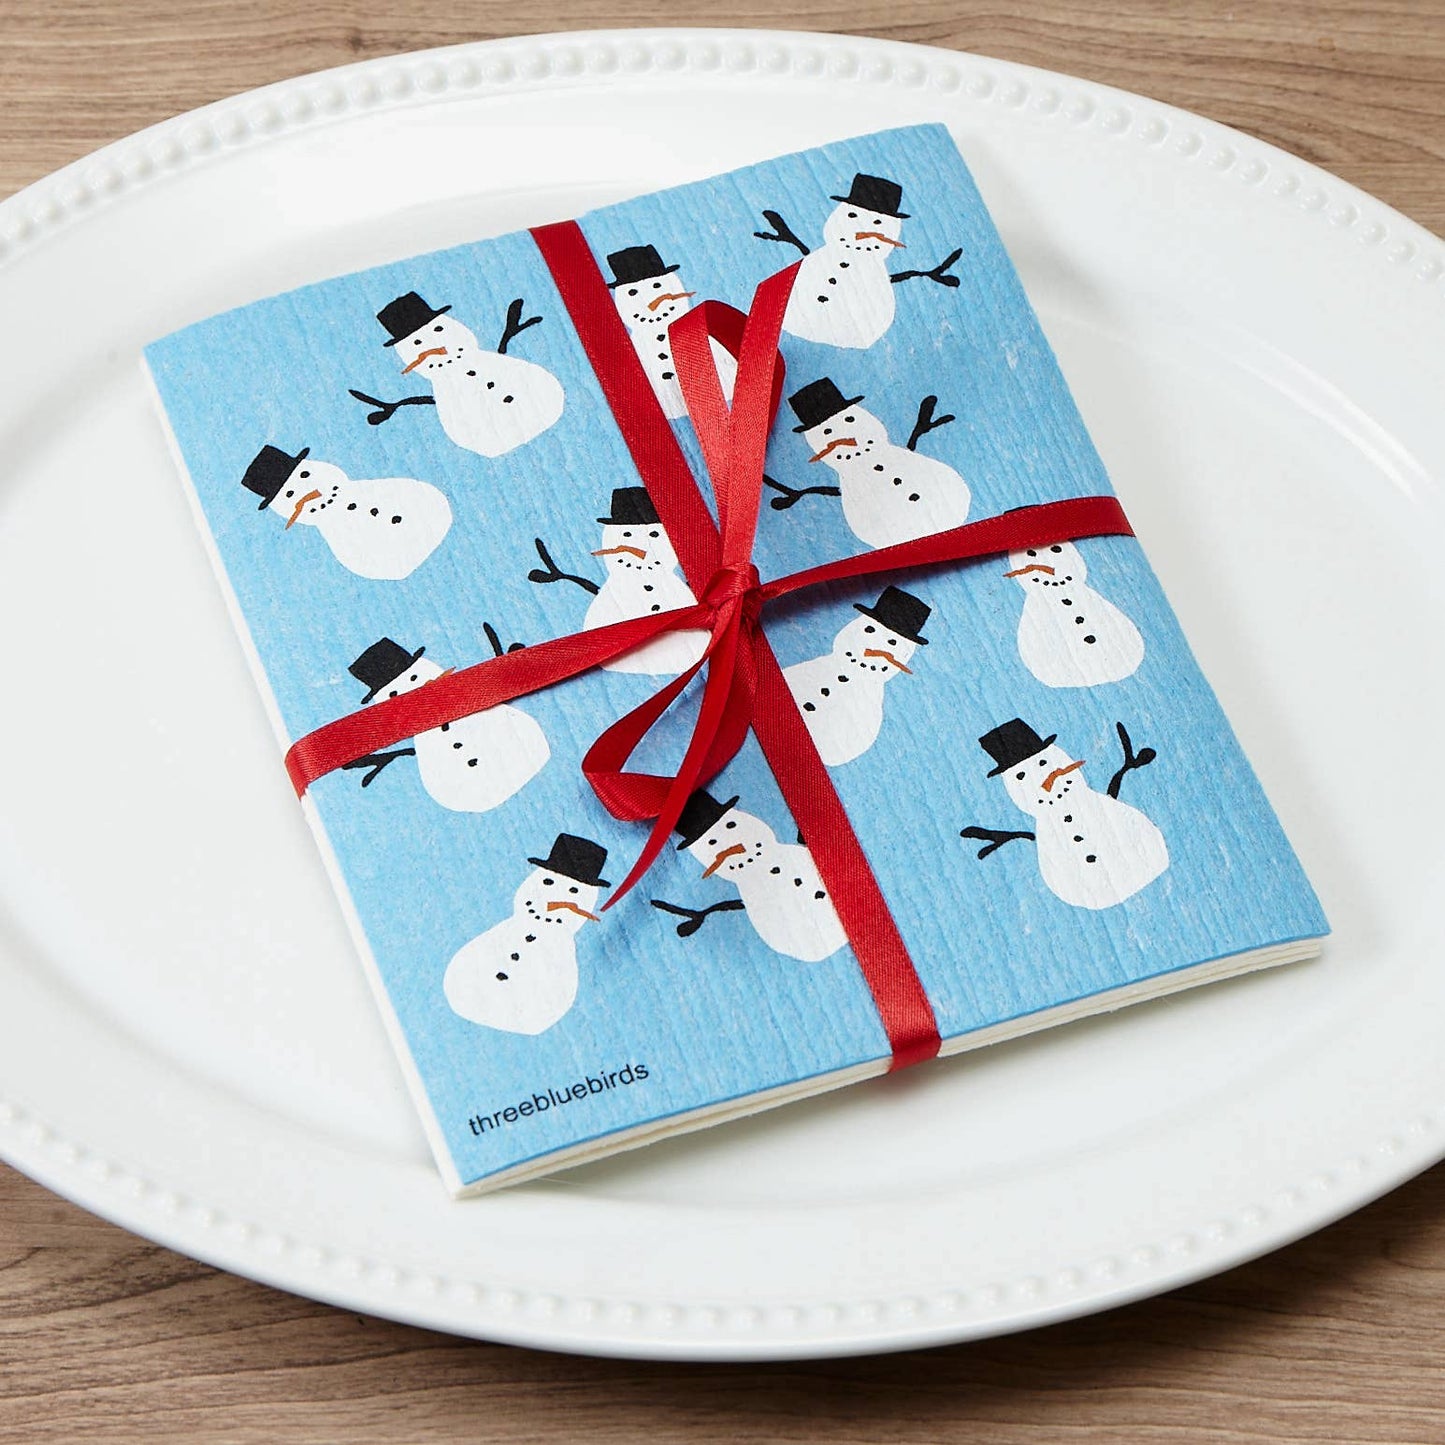 Three Bluebirds Swedish Dishcloths - Frosty Friends on Blue Swedish Dishcloth